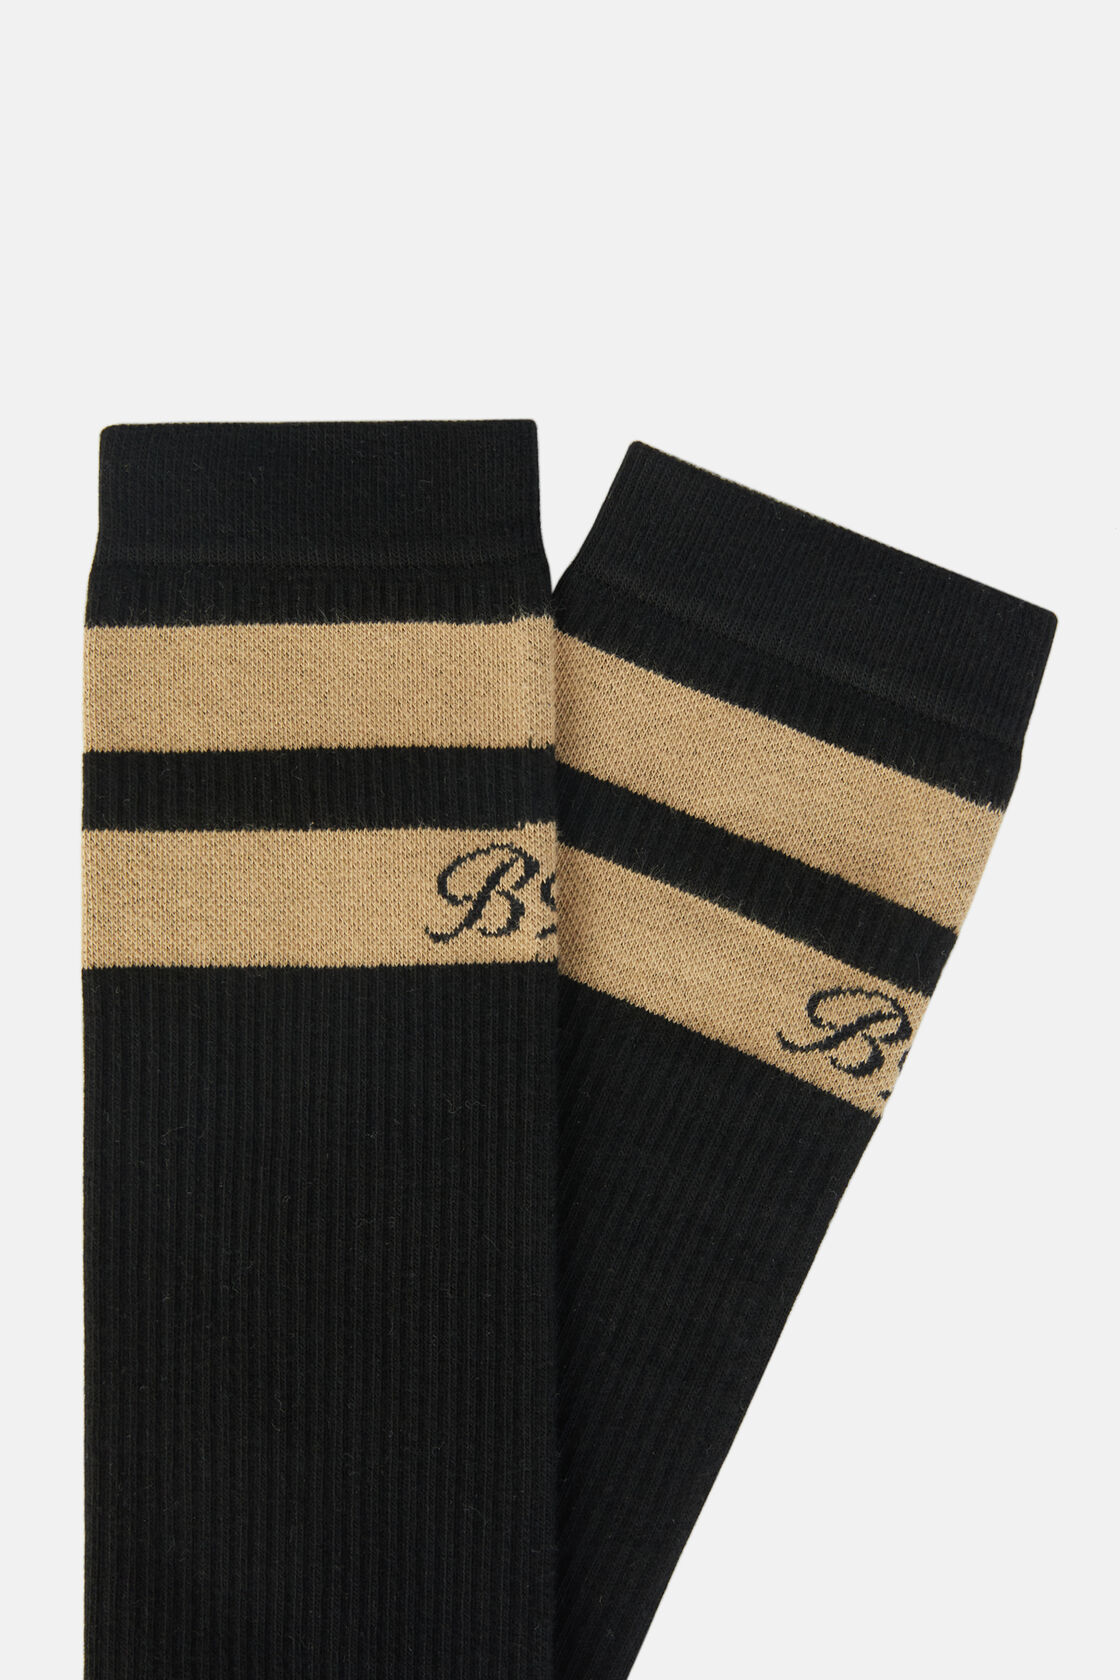 Κάλτσες με διπλή ρίγα, από σύμμεικτο βαμβάκι, Black, hi-res